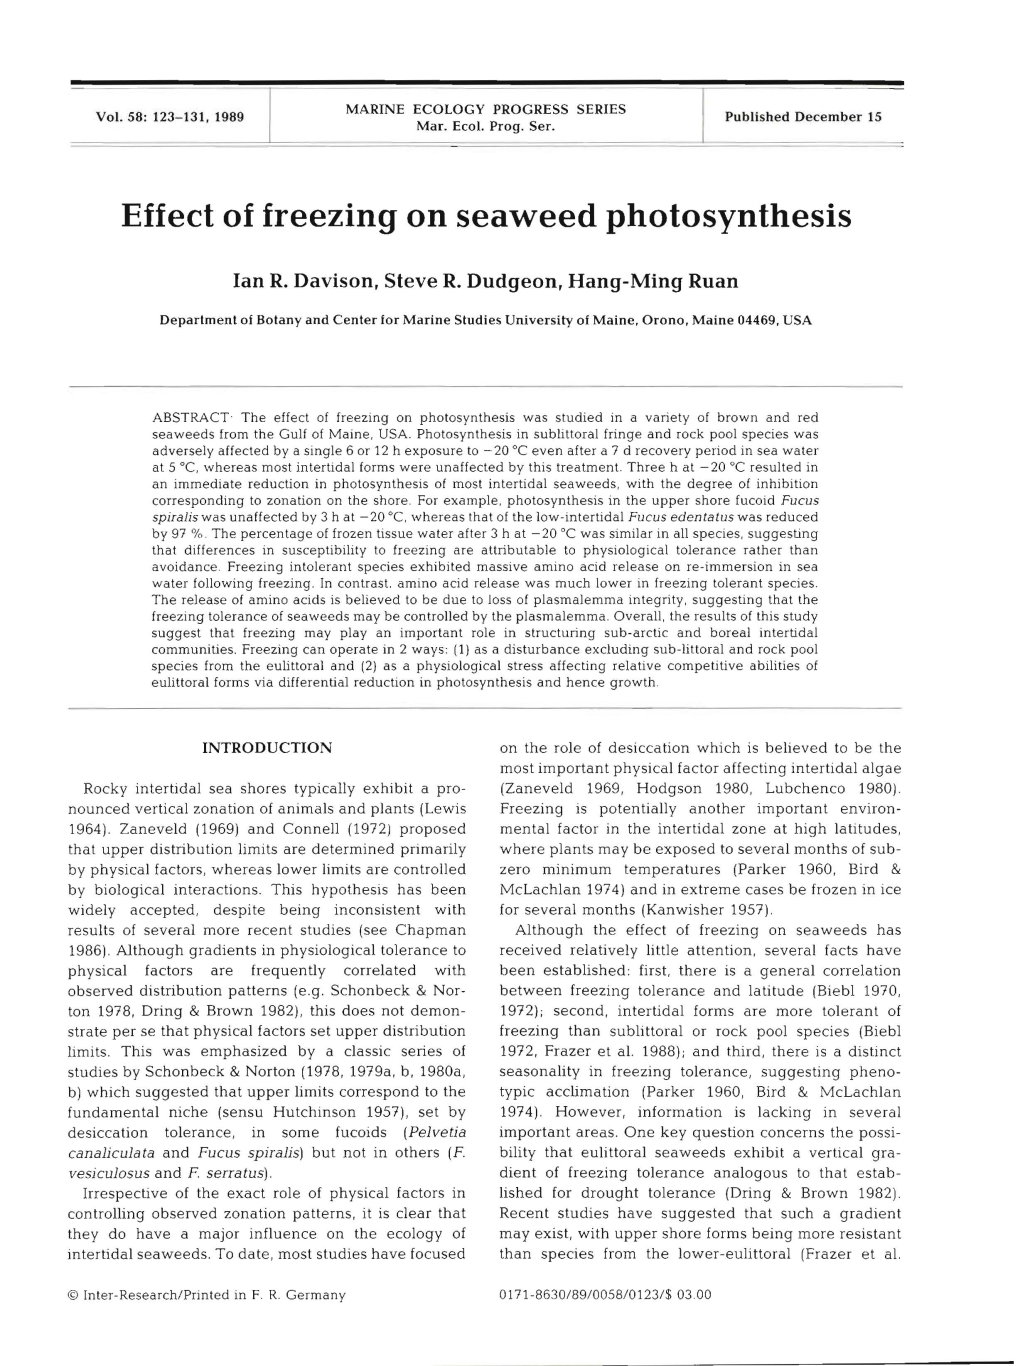 Effect of Freezing on Seaweed Photosynthesis